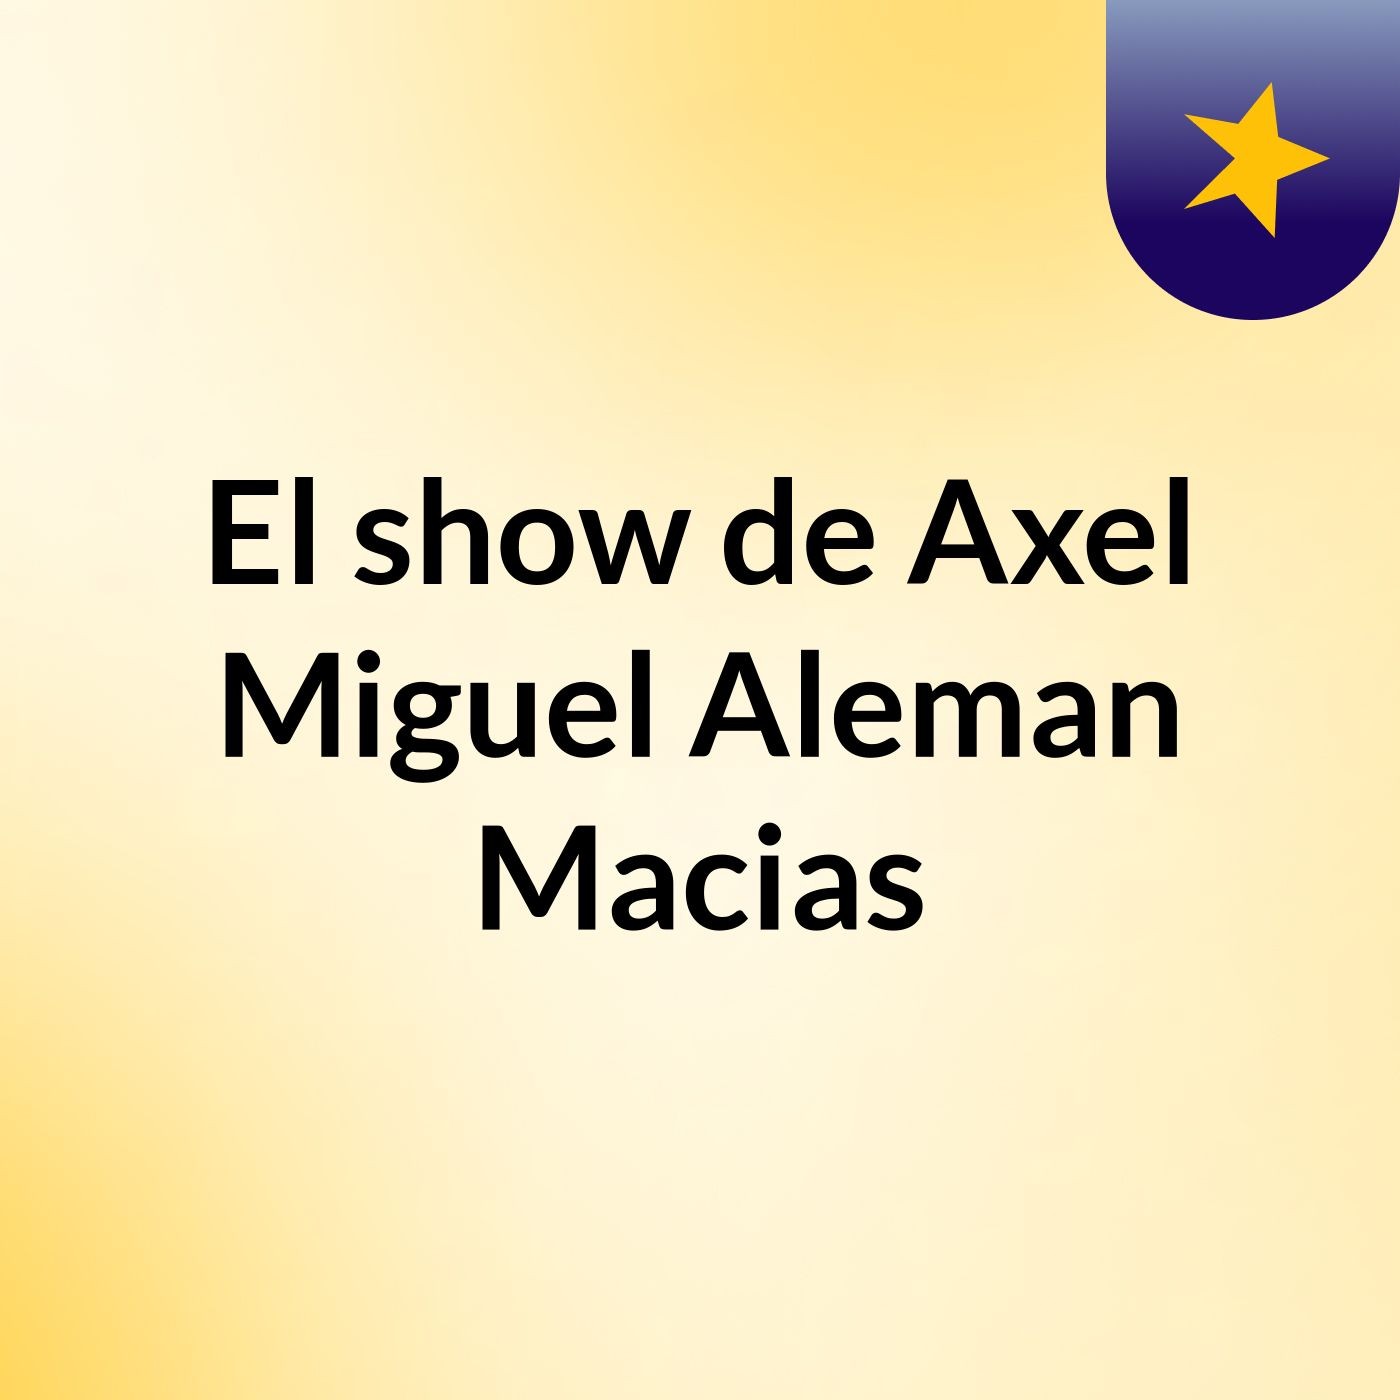 El show de Axel Miguel Aleman Macias